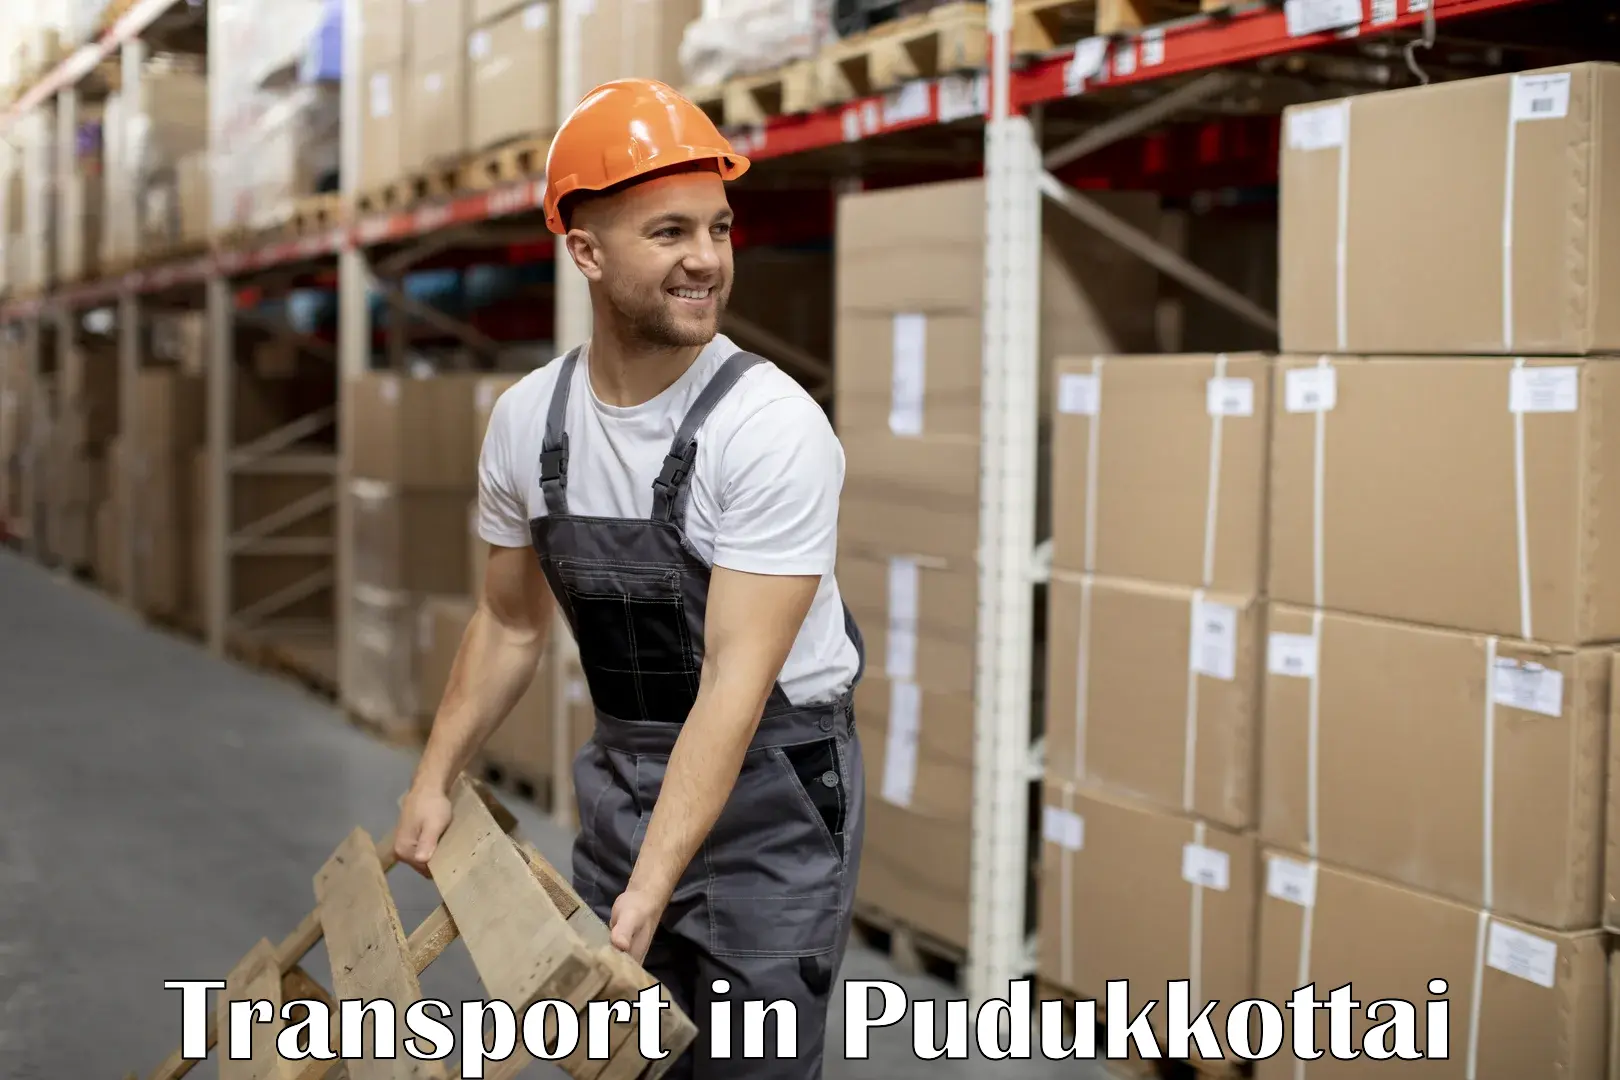 Nearest transport service in Pudukkottai